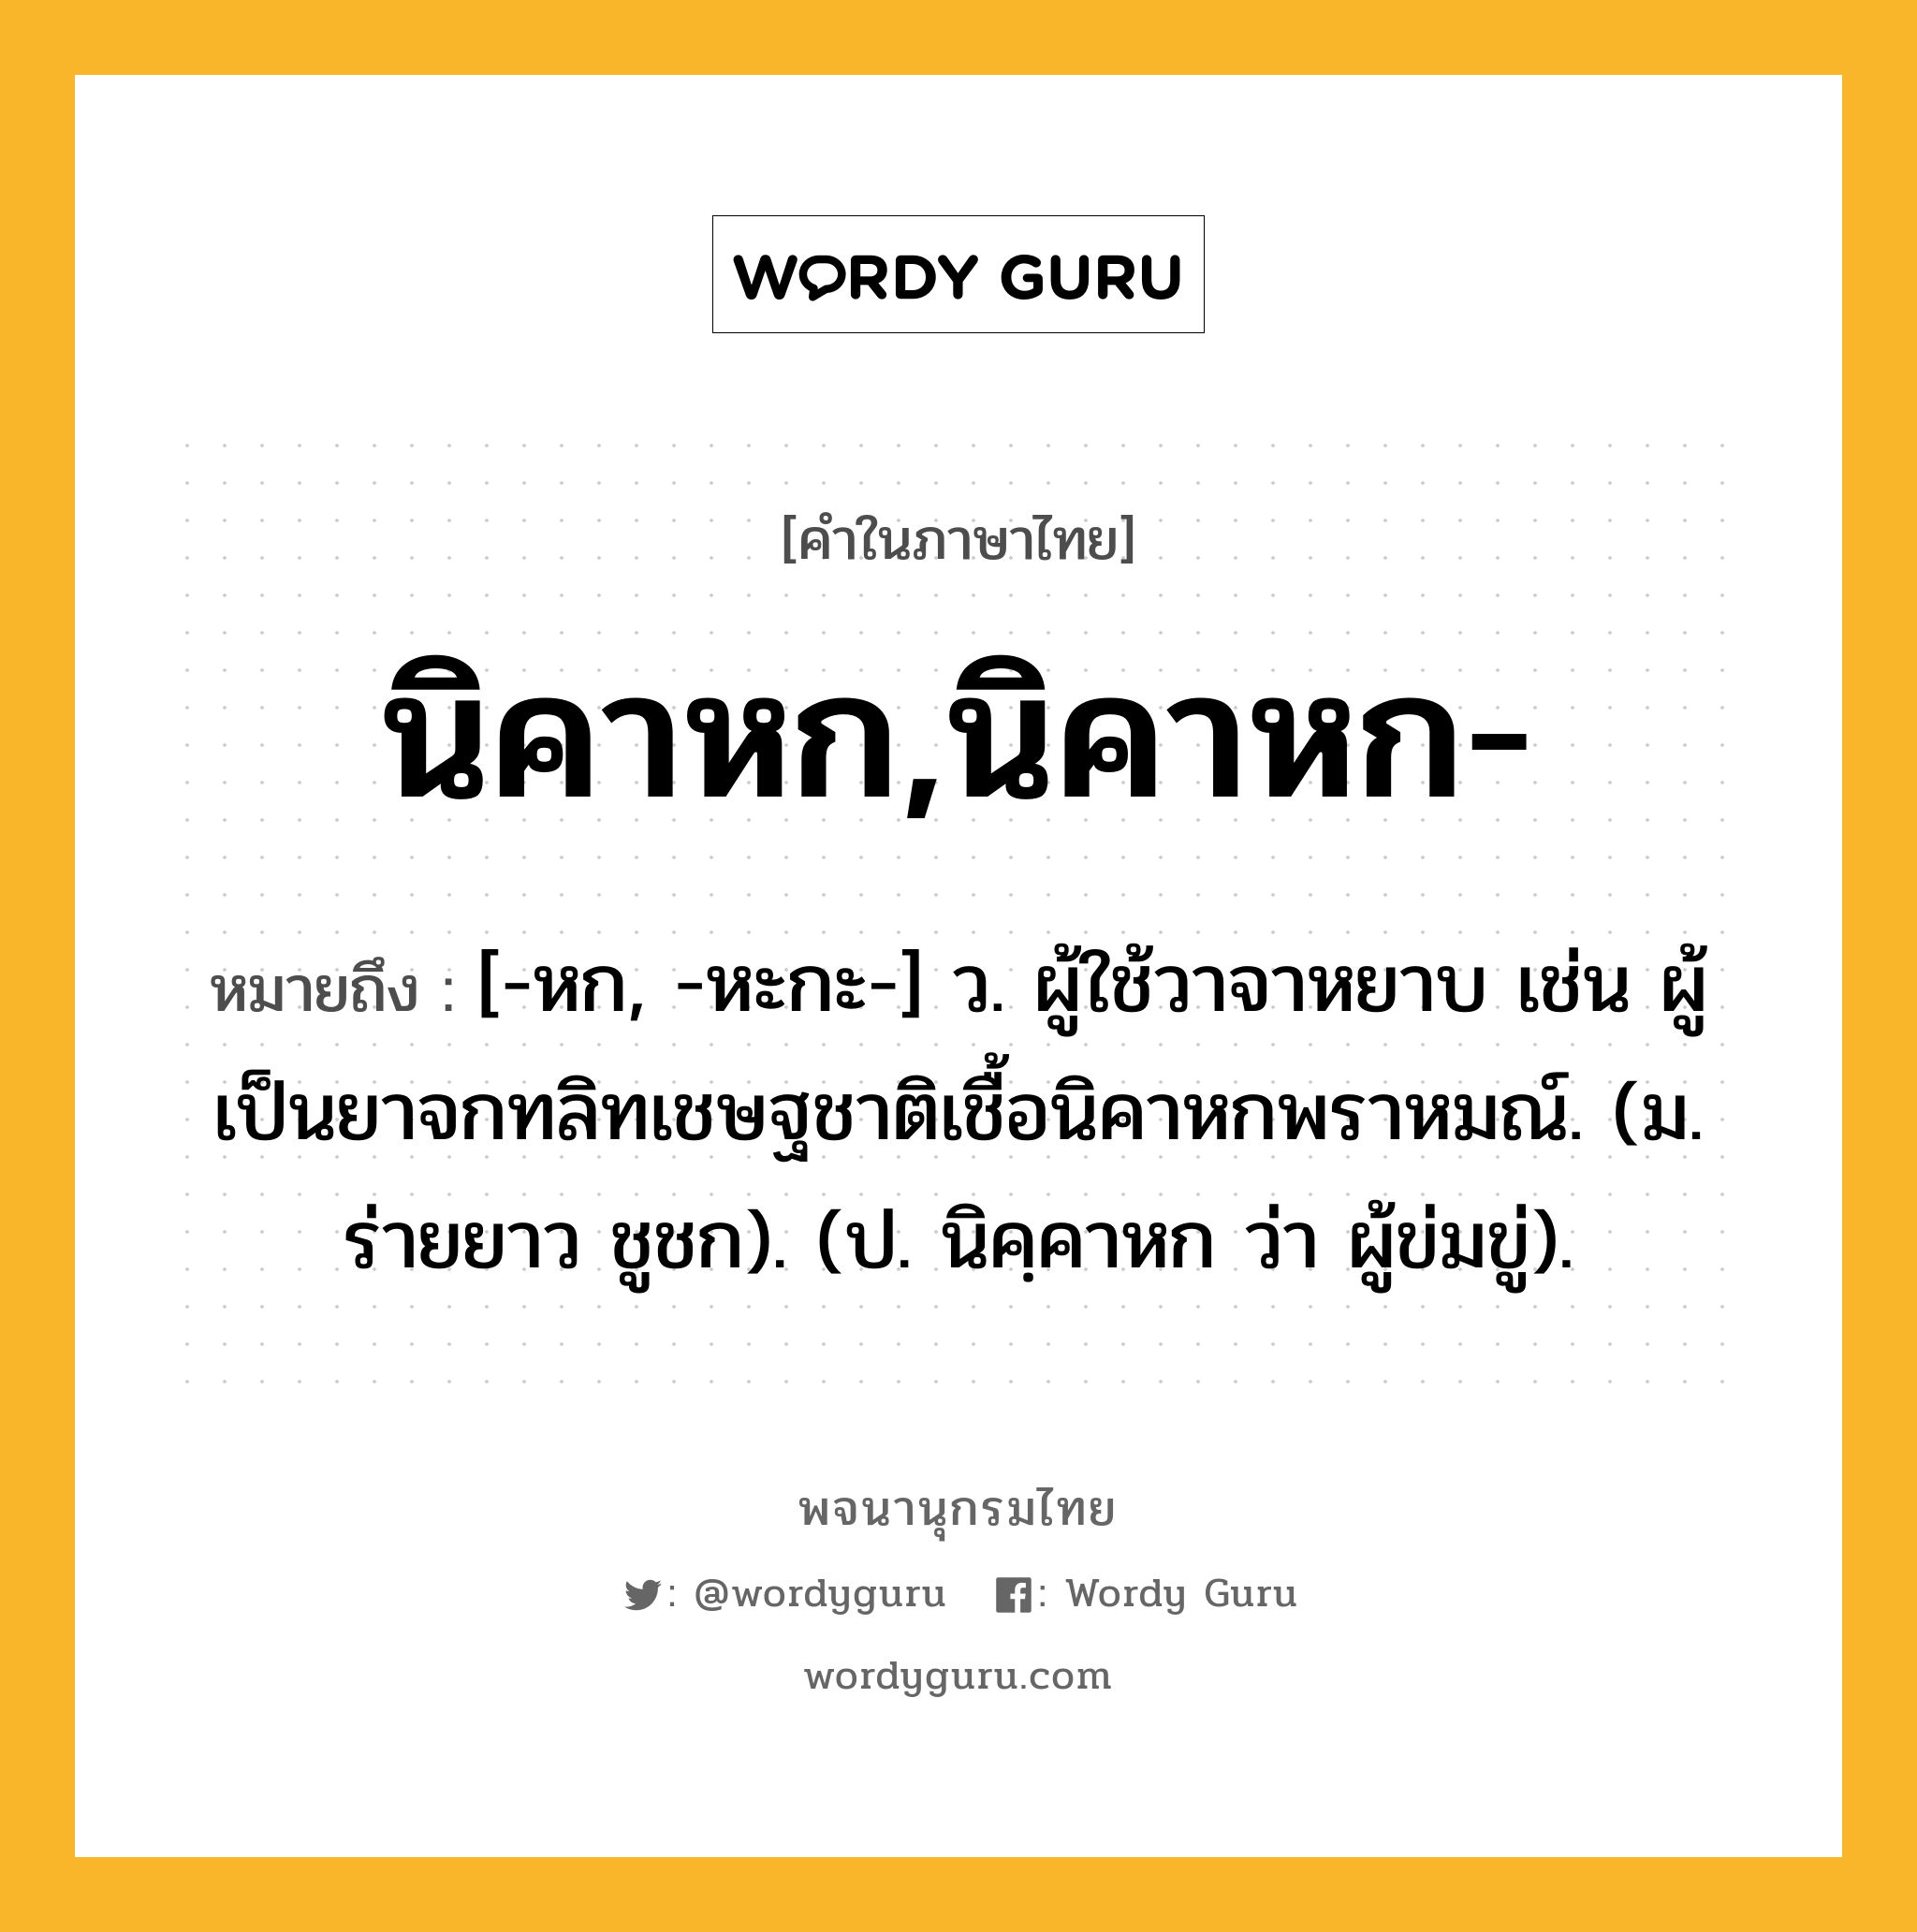 นิคาหก,นิคาหก- หมายถึงอะไร?, คำในภาษาไทย นิคาหก,นิคาหก- หมายถึง [-หก, -หะกะ-] ว. ผู้ใช้วาจาหยาบ เช่น ผู้เป็นยาจกทลิทเชษฐชาติเชื้อนิคาหกพราหมณ์. (ม. ร่ายยาว ชูชก). (ป. นิคฺคาหก ว่า ผู้ข่มขู่).